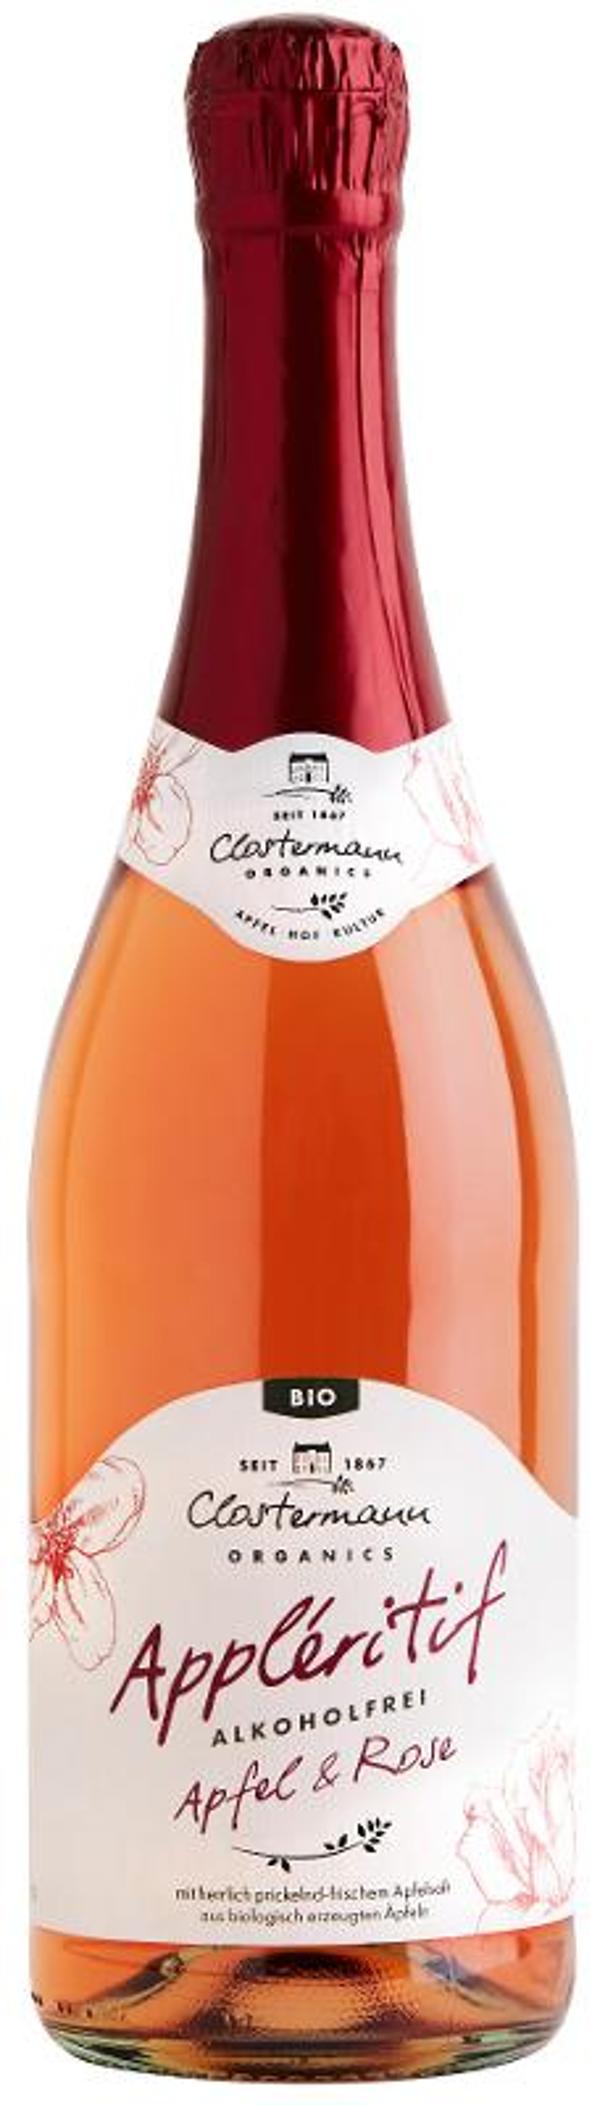 Produktfoto zu Kiste Appléritif Perlwein aus Äpfeln und Rosen 0,75l Flasche alkoholfrei